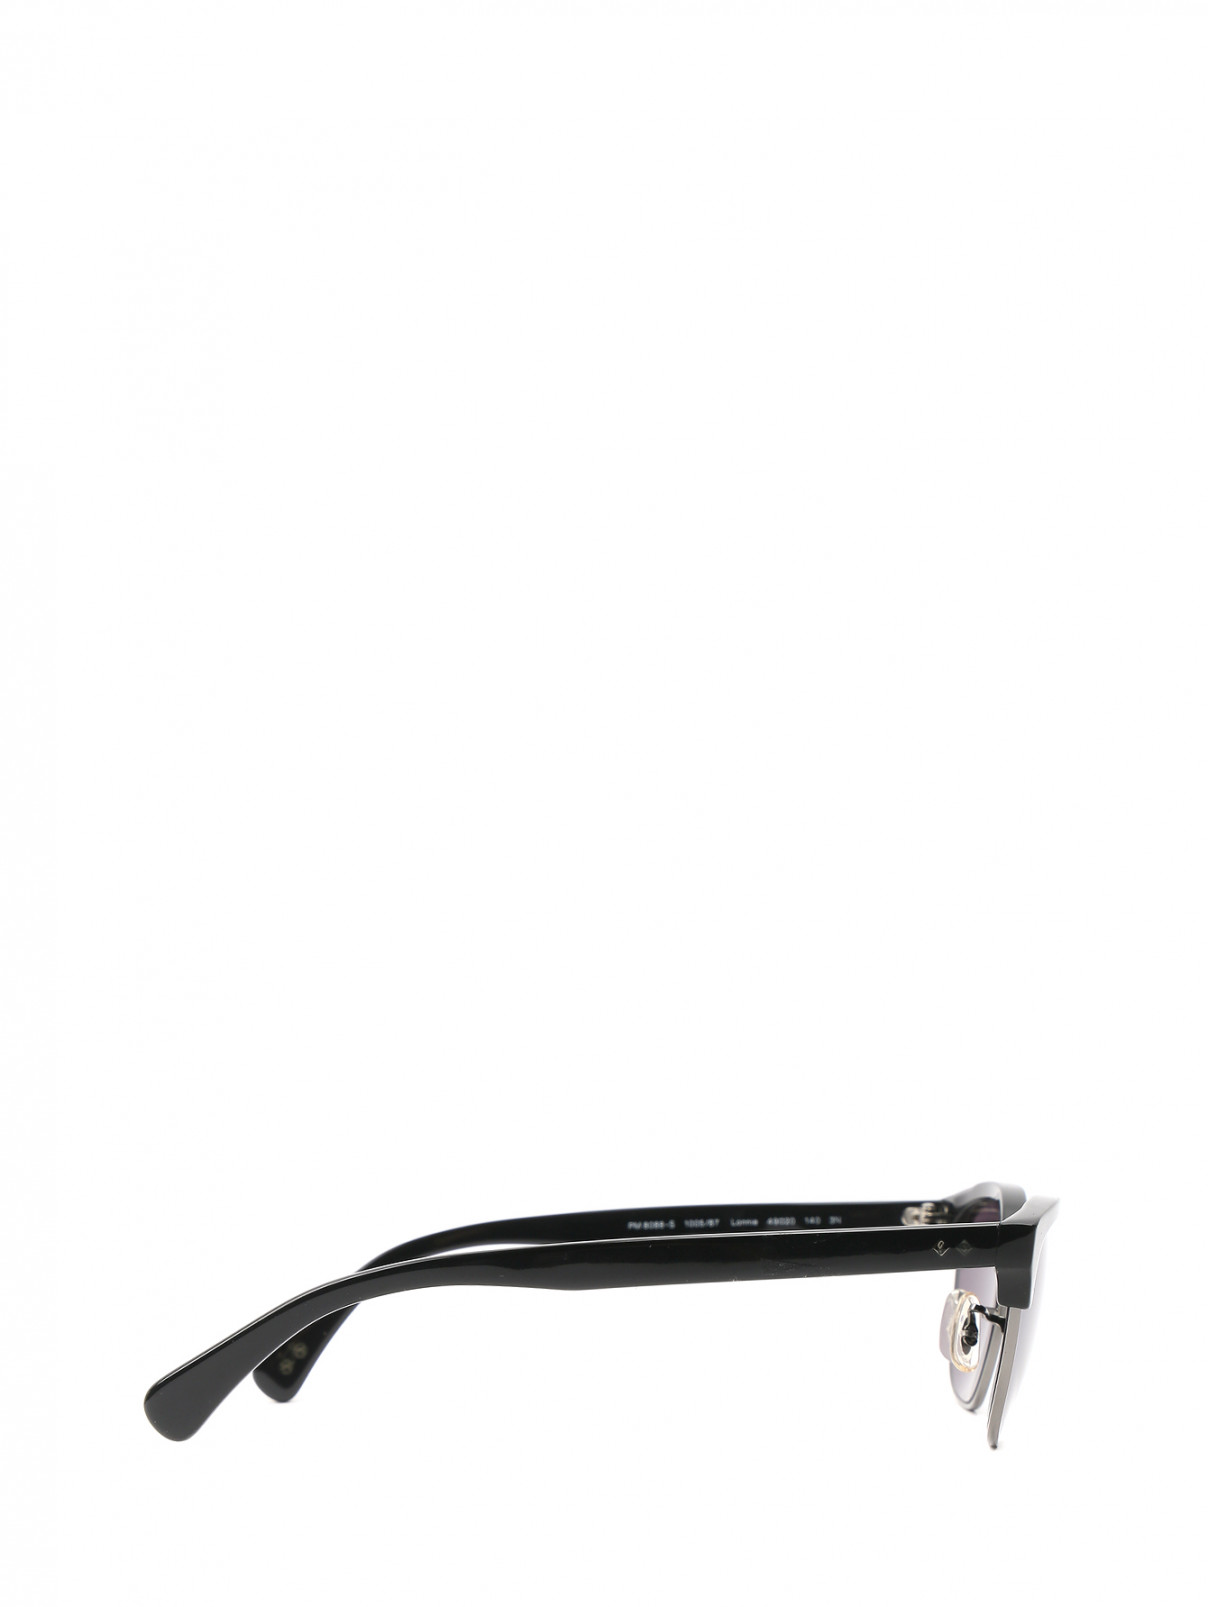 Cолнцезащитные очки в оправе из пластика и металла Paul Smith  –  Обтравка2  – Цвет:  Черный